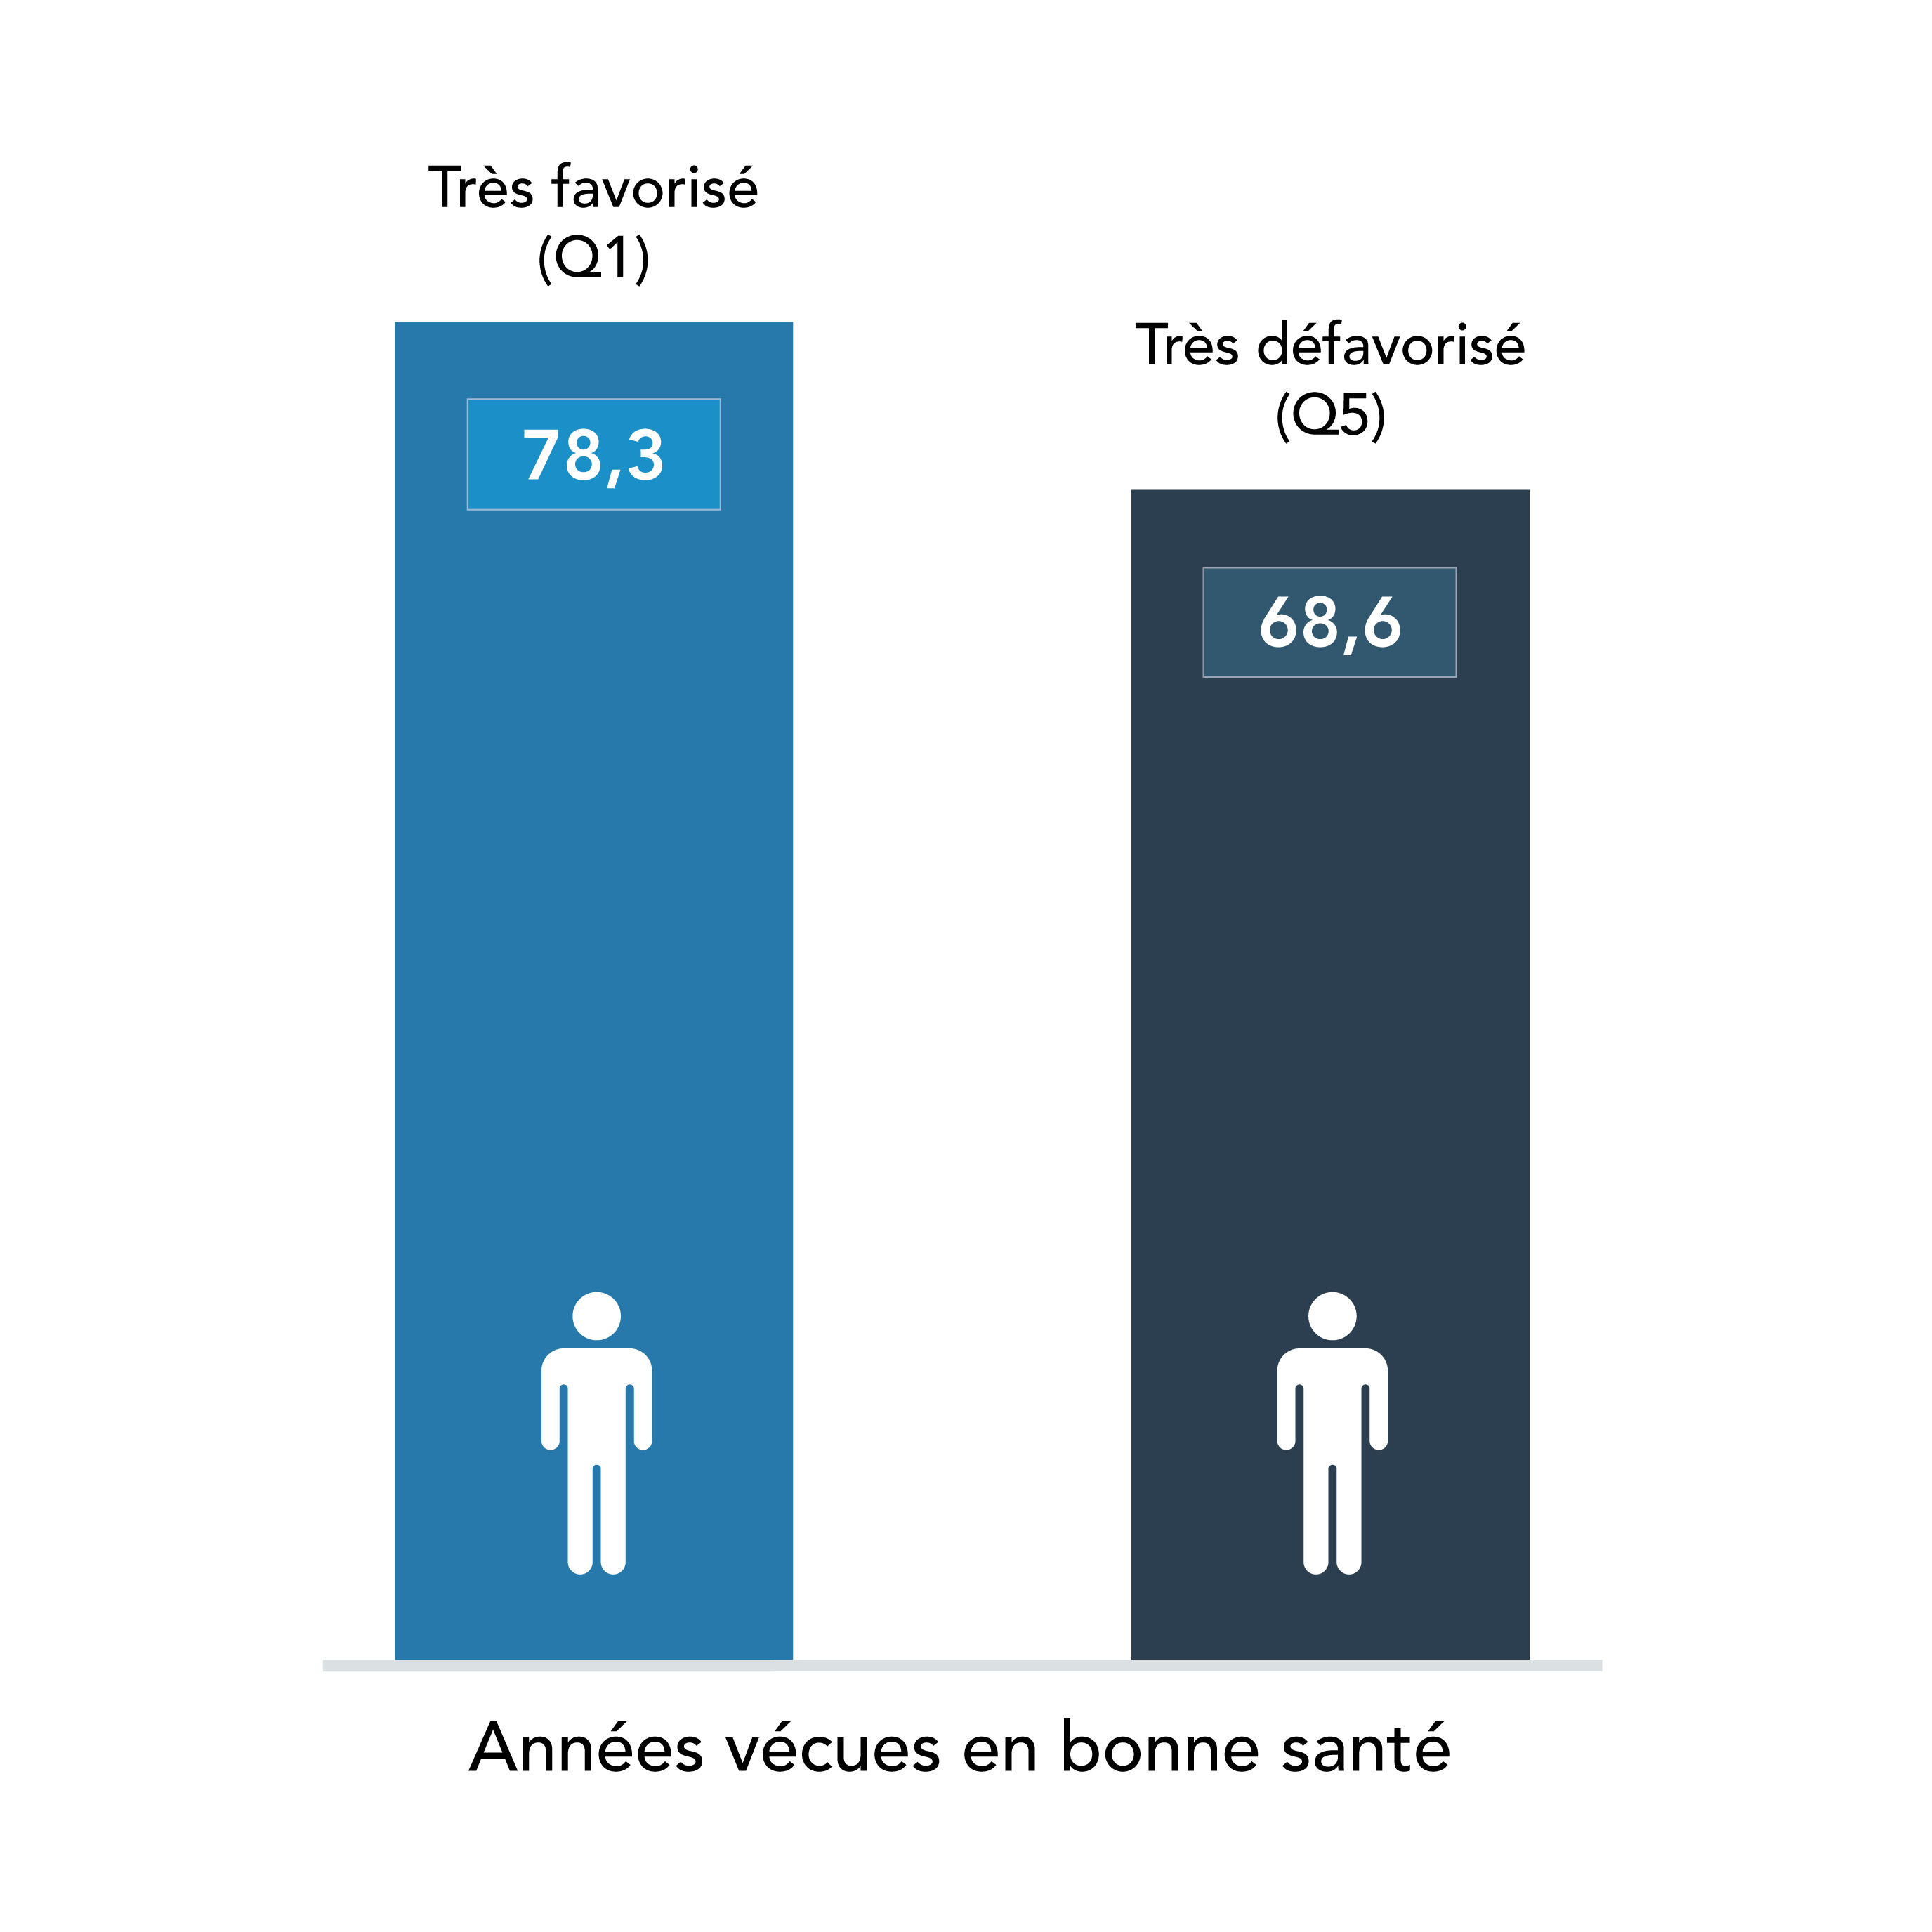 L’espérance de vie en bonne santé à la naissance ajustée selon l’indice de défavorisation matérielle et sociale était de 78,3 ans chez les hommes très favorisés et de 68,6 ans chez les hommes très défavorisés en 2011-2012, au Québec.